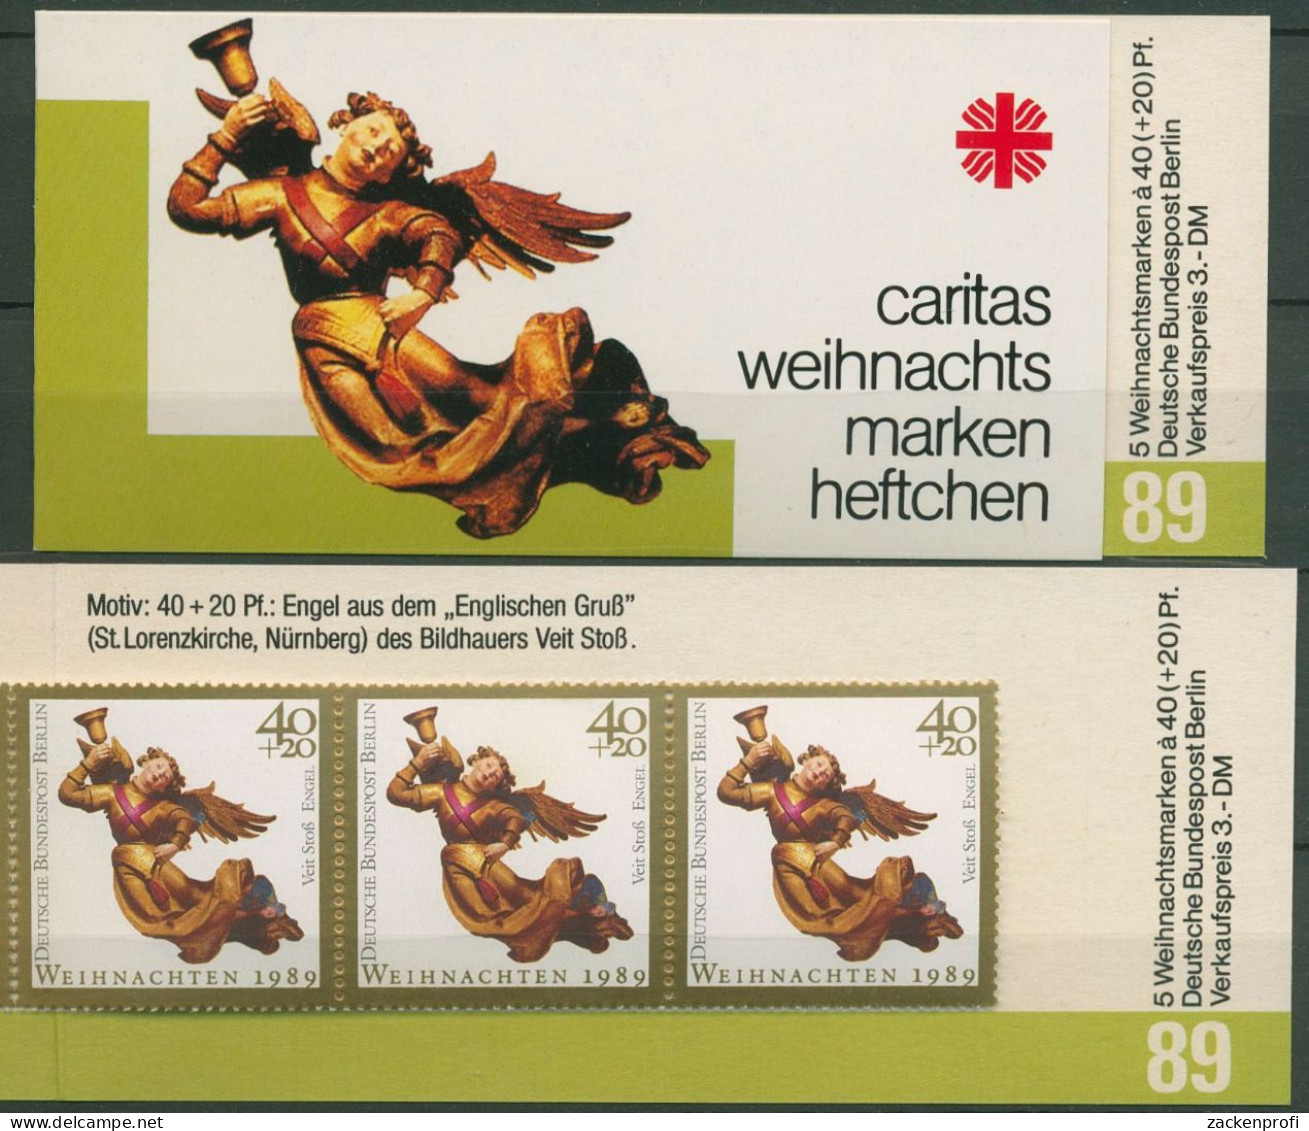 Berlin Caritas 1989 Weihnachten Markenheftchen (858) MH W 7 Postfrisch (C60249) - Postzegelboekjes